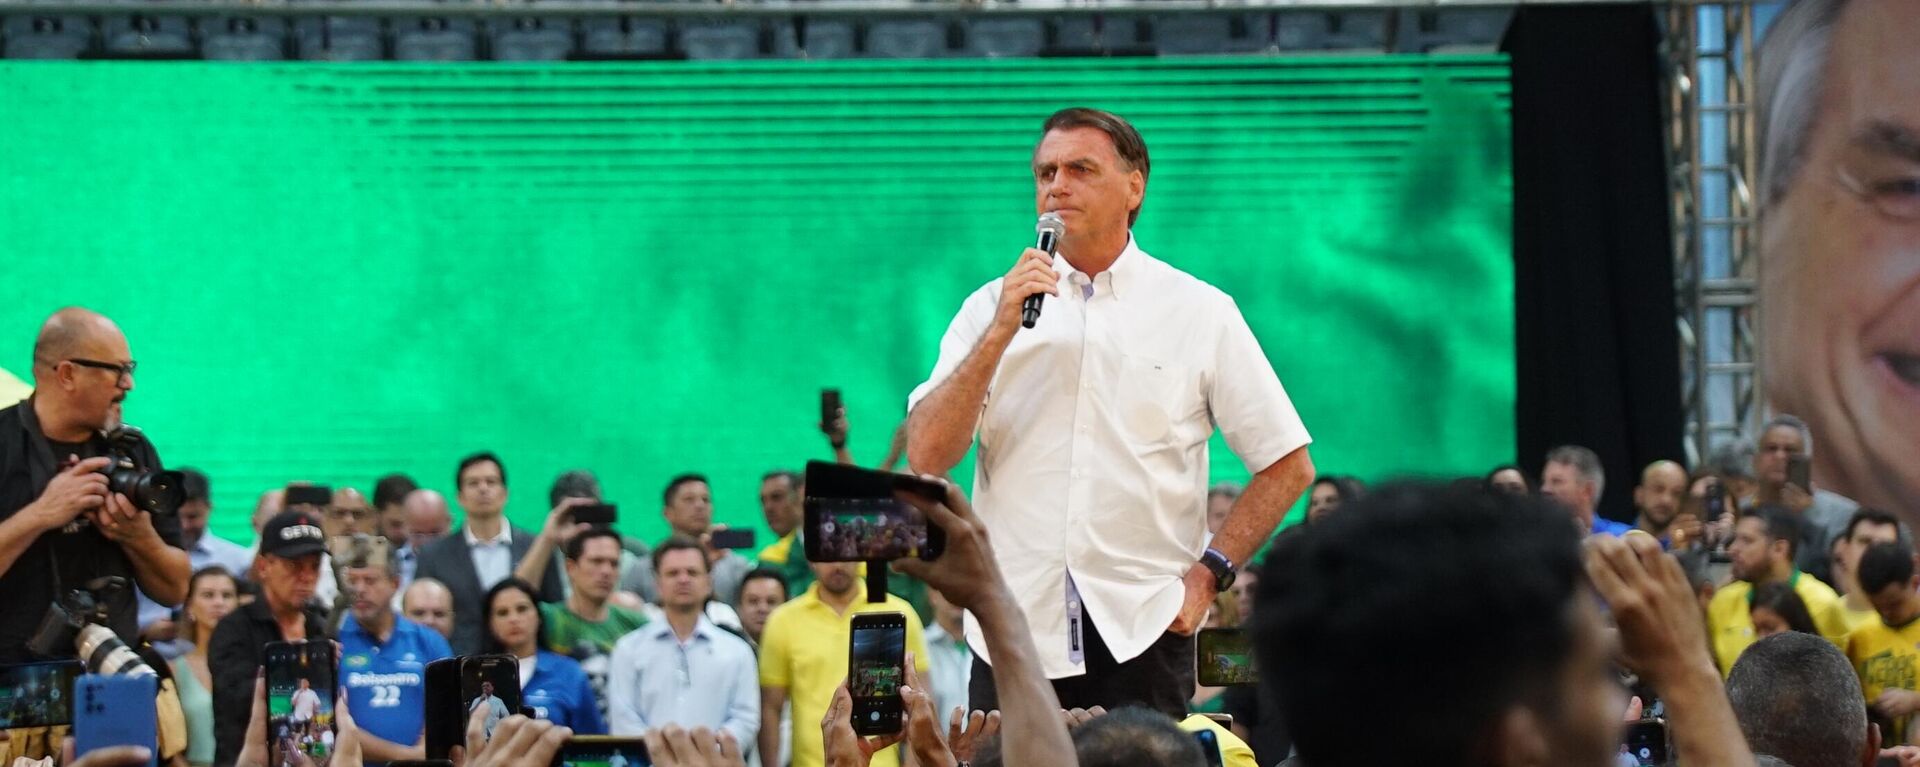 PL lança oficialmente Bolsonaro candidato à reeleição à Presidência em convenção no Maracanãzinho  - Sputnik Brasil, 1920, 24.07.2022